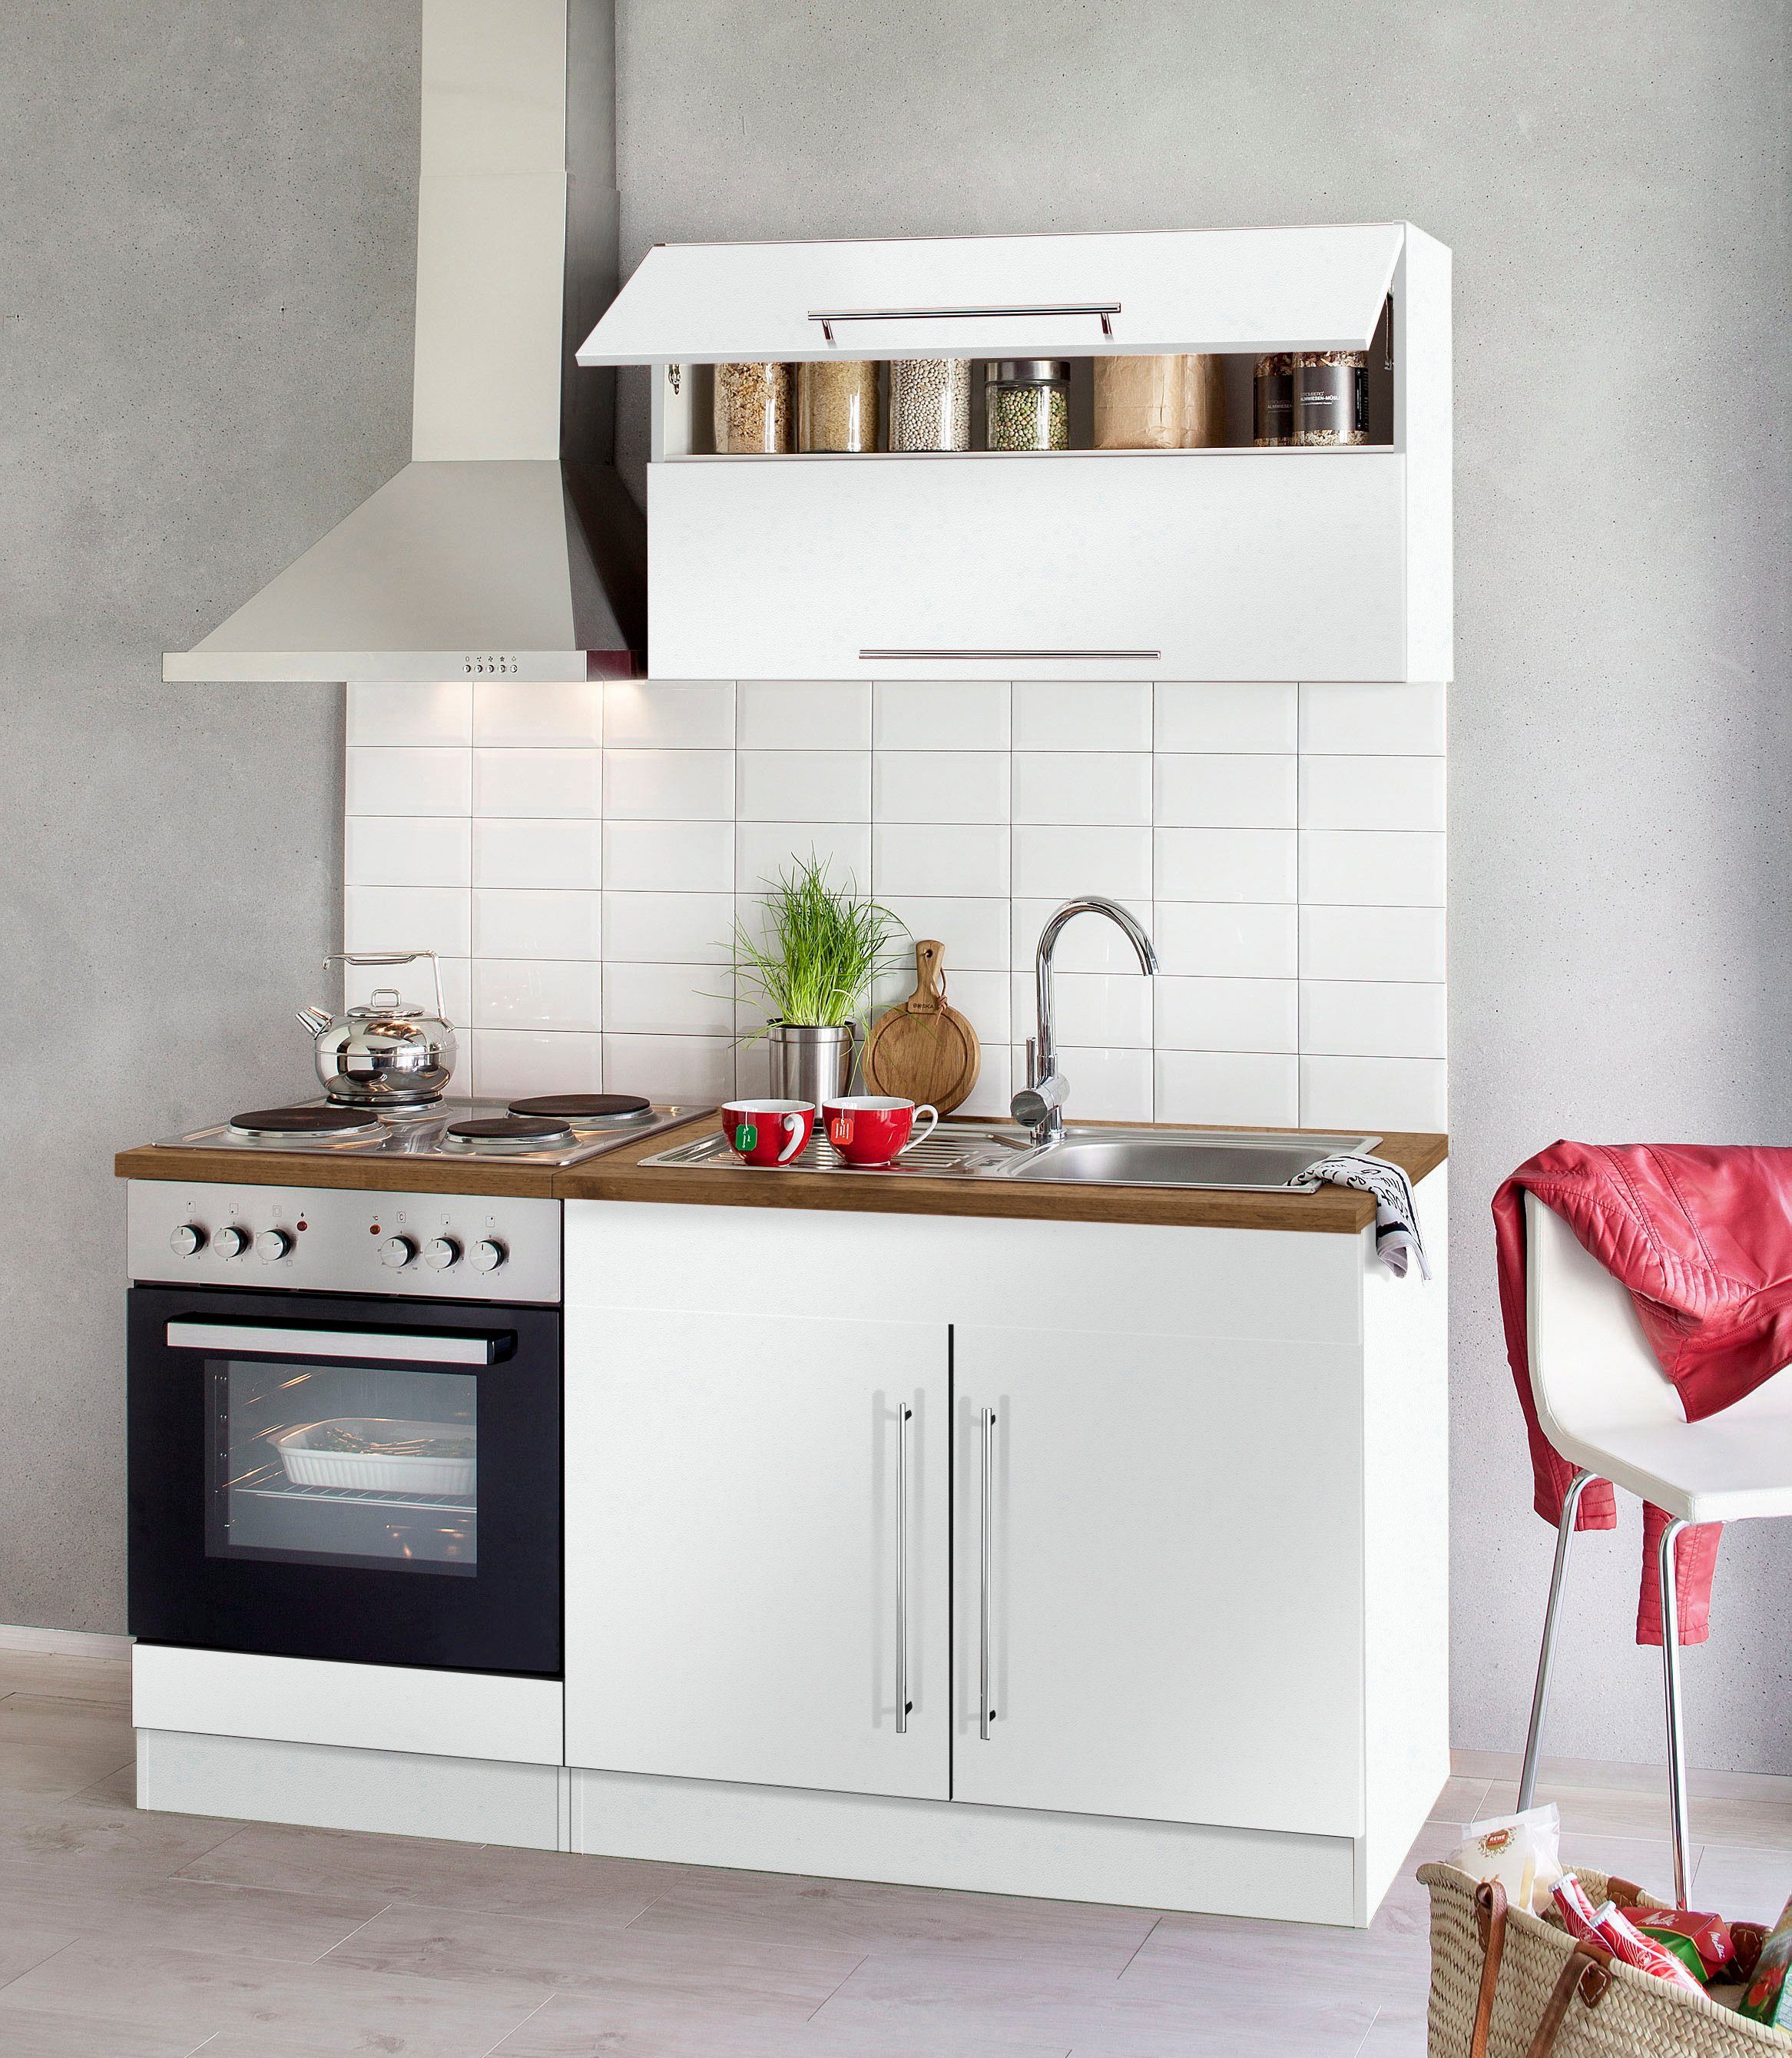 Kochstation Küchenzeile KS-Samos, mit E-Geräten, Breite 160 cm